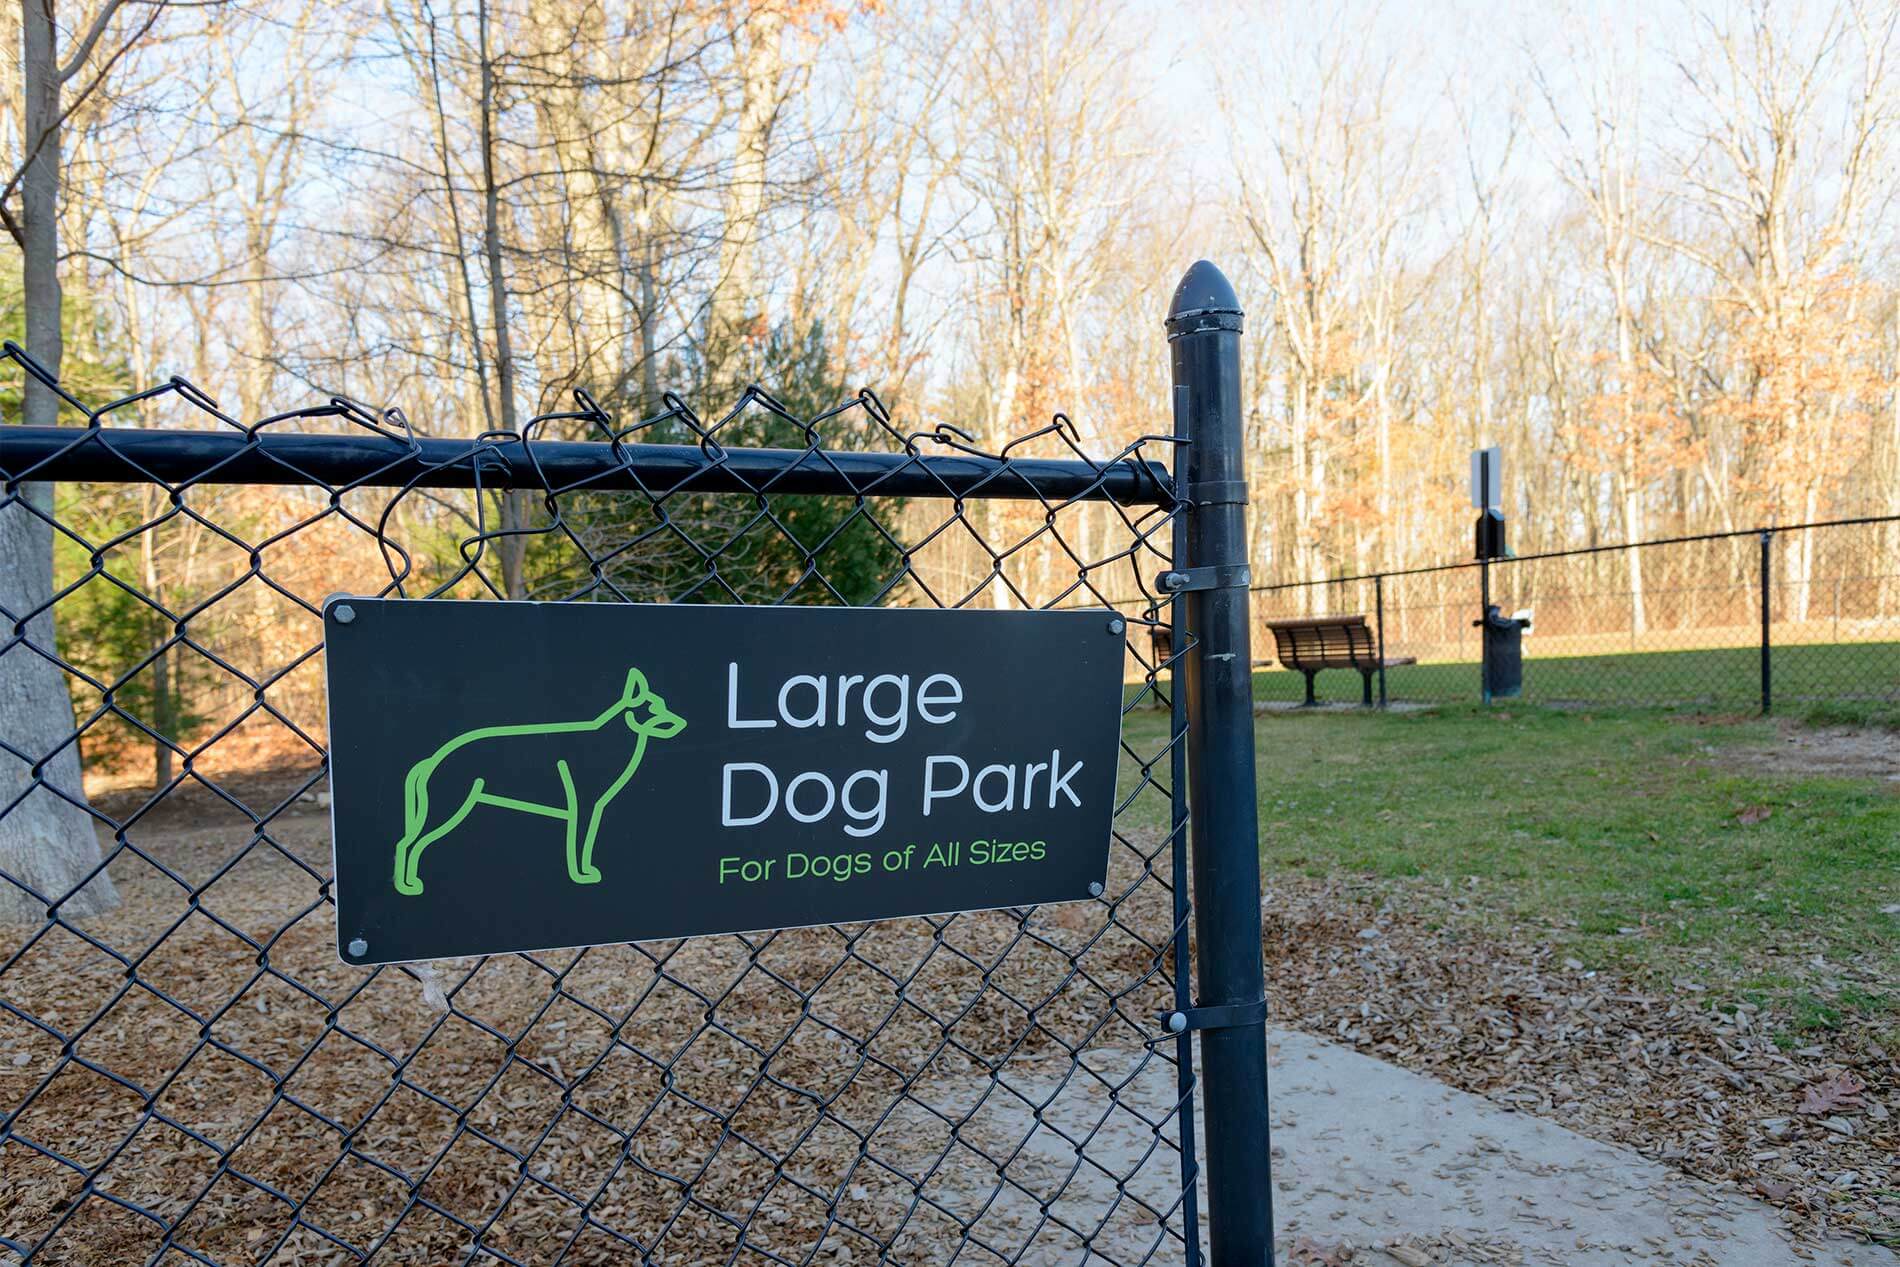 One Upland large dog park